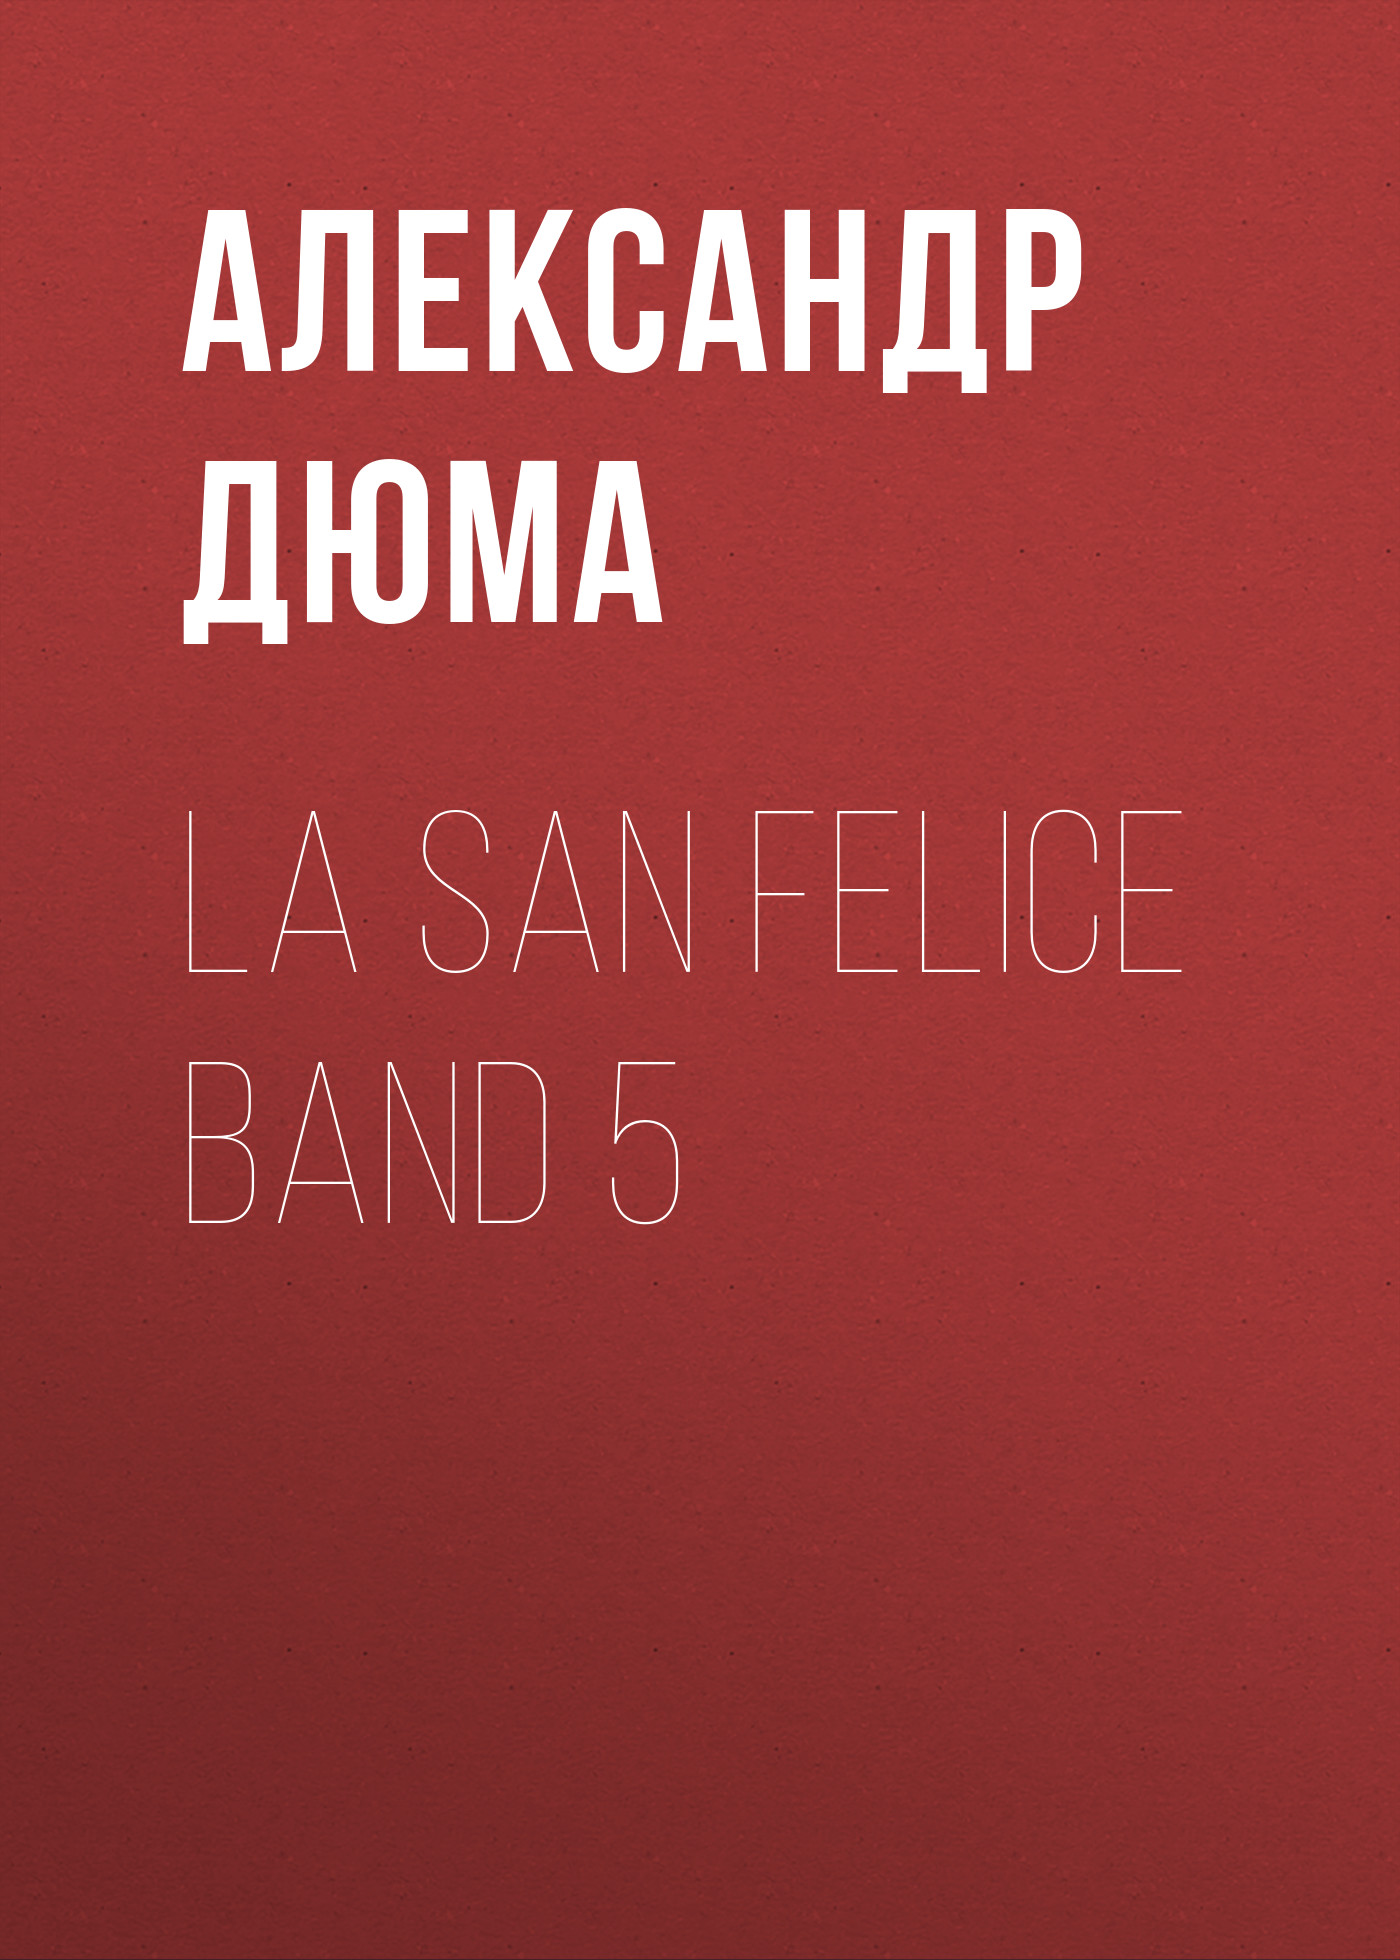 Книга La San Felice Band 5 из серии , созданная Alexandre Dumas der Ältere, может относится к жанру Зарубежная классика. Стоимость электронной книги La San Felice Band 5 с идентификатором 48632796 составляет 0 руб.